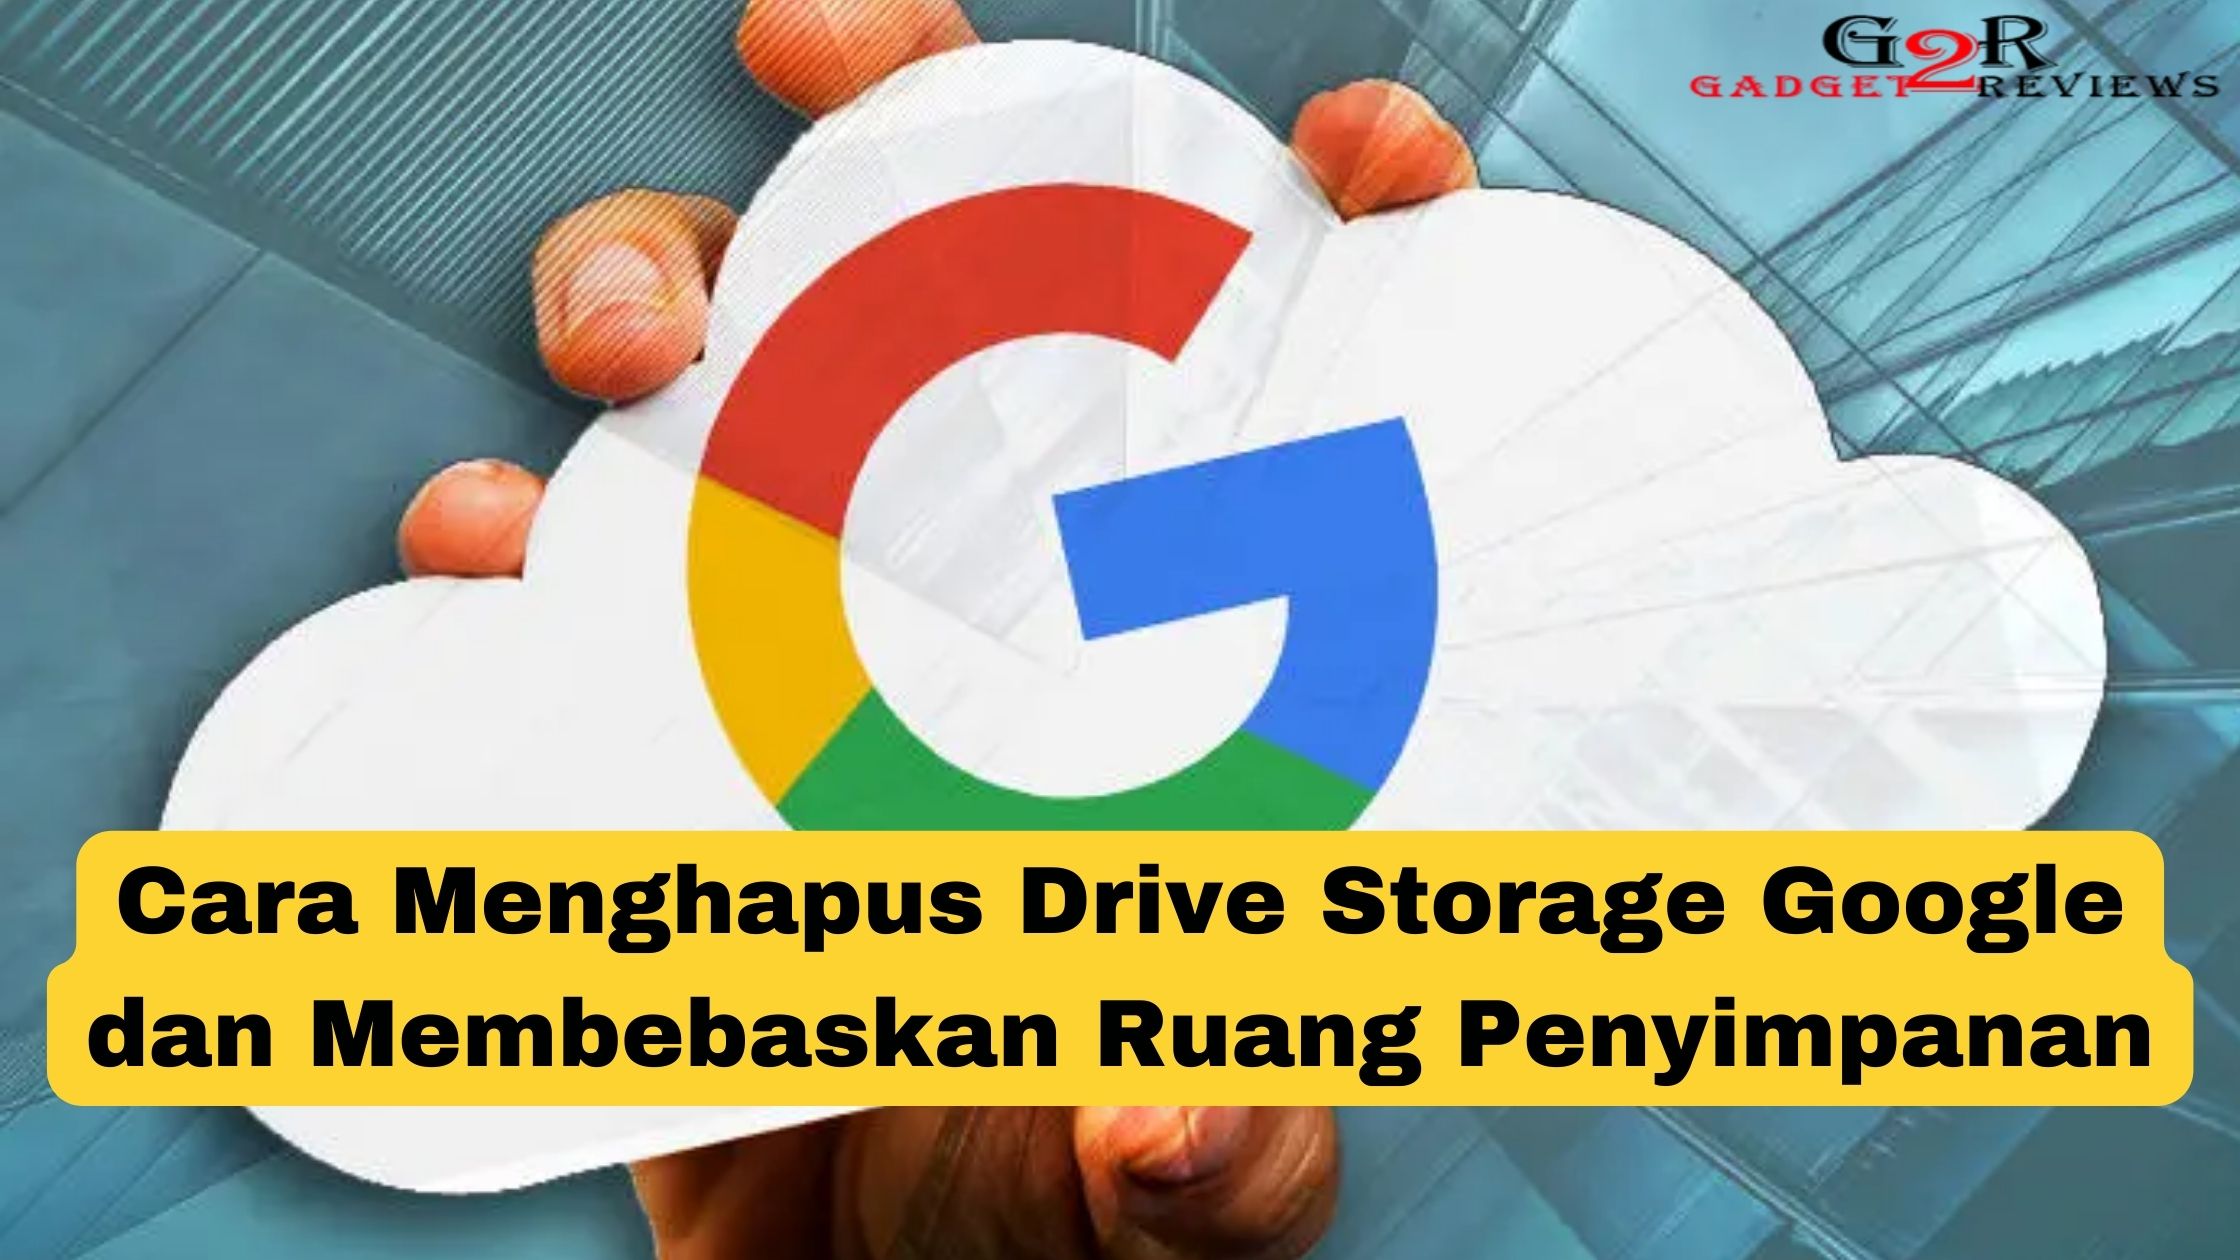 Cara Menghapus Drive Storage Google